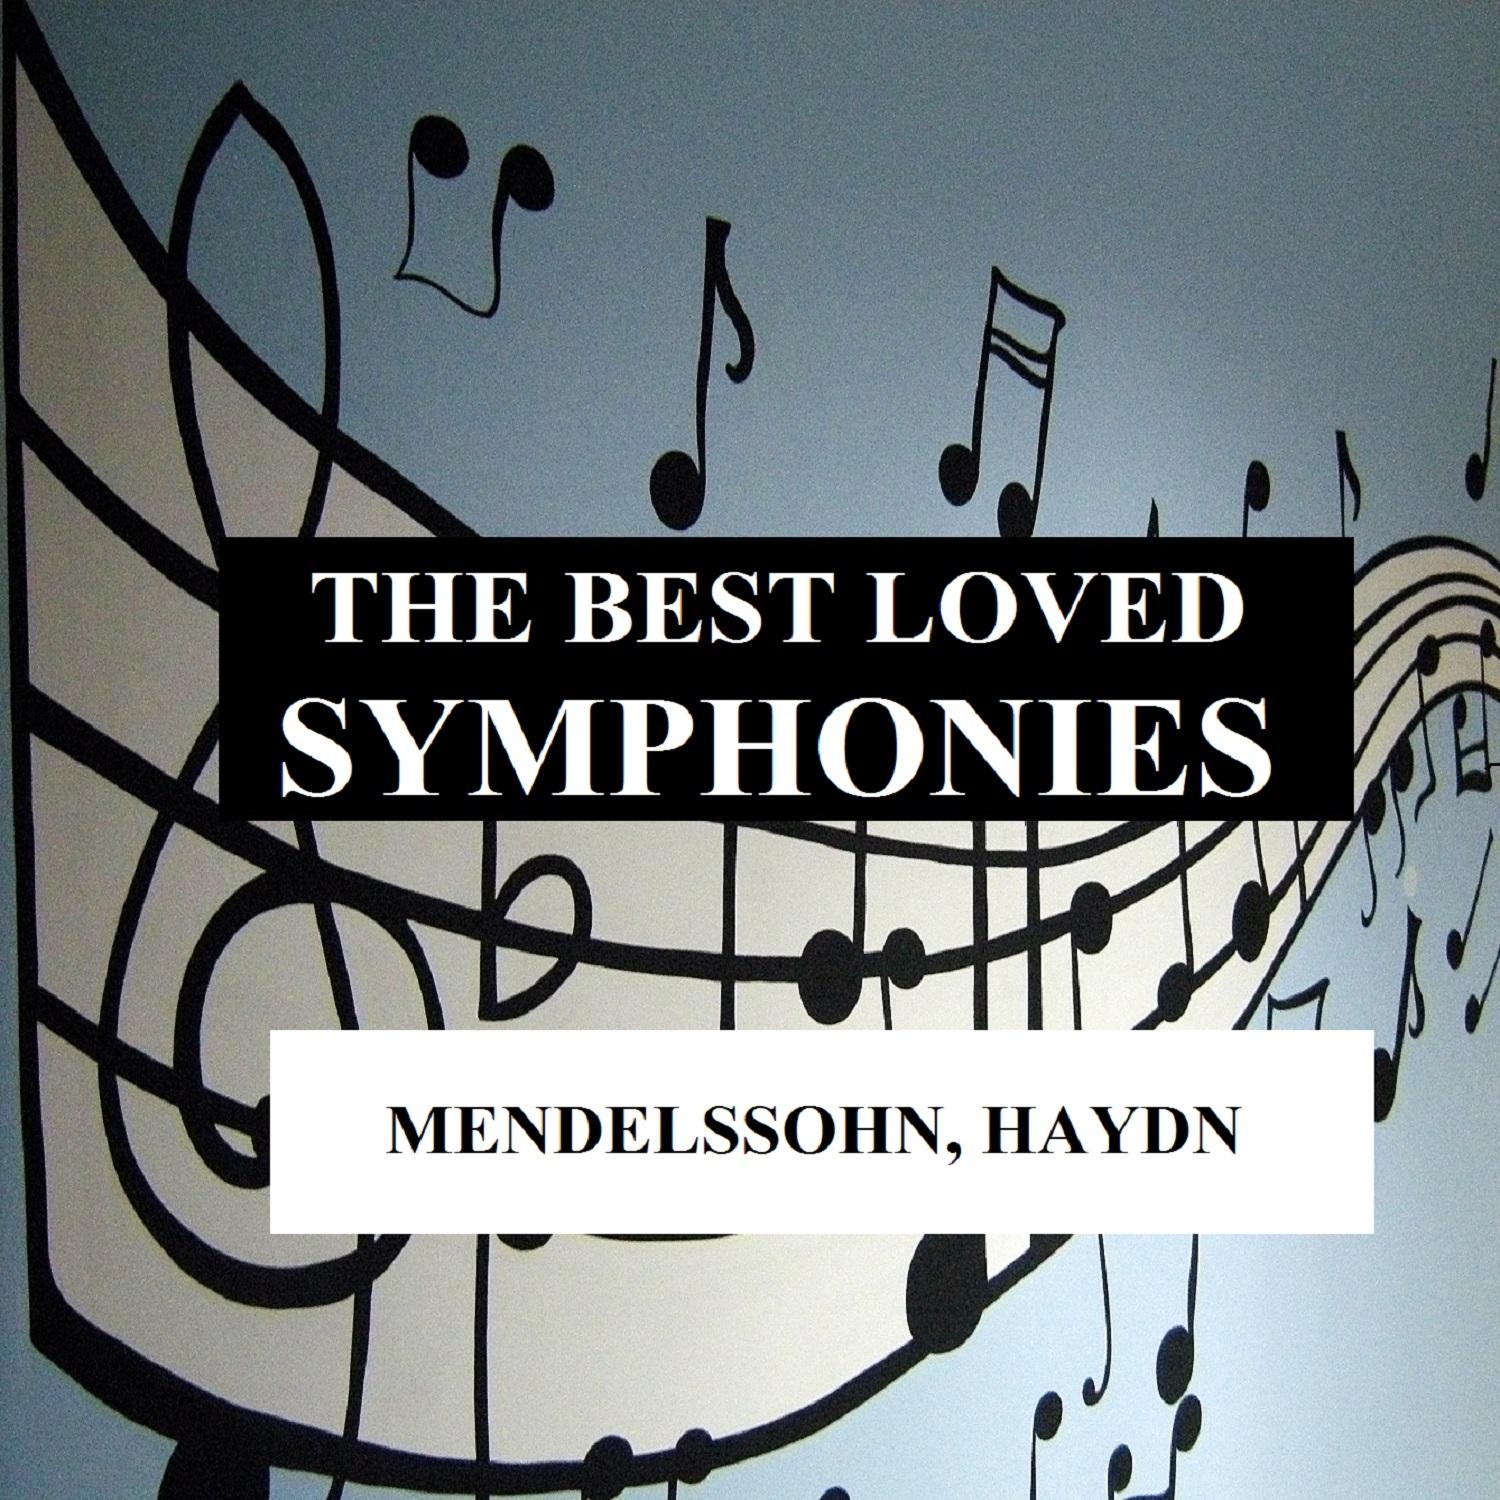 The Best Loved Symphonies - Mendelssohn, Haydn